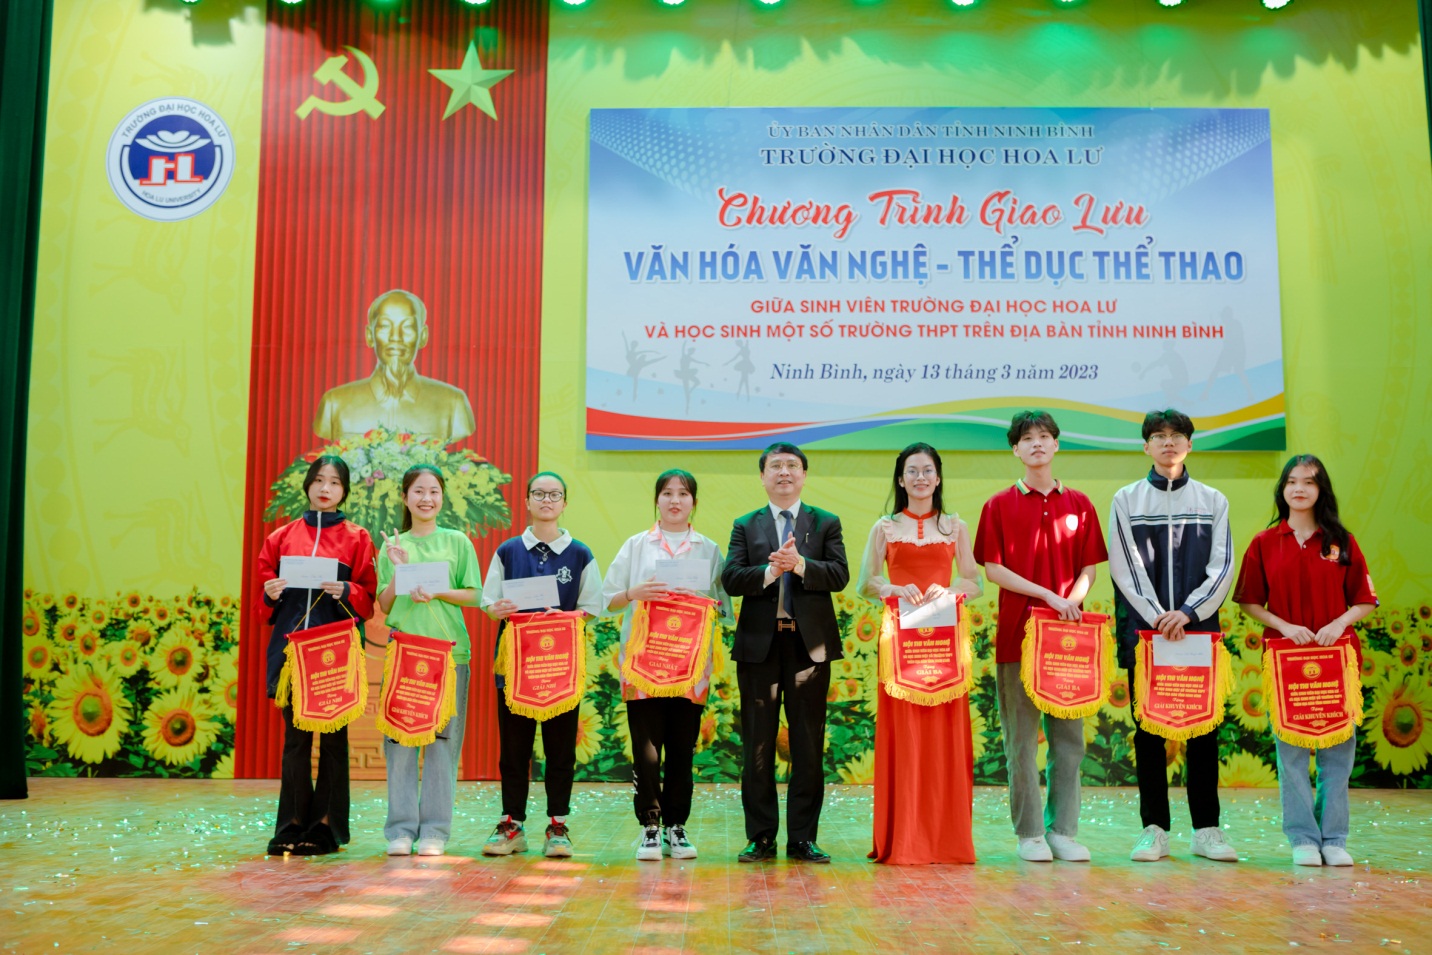 Chương trình giao lưu văn hóa – văn nghệ, thể dục – thể thao giữa sinh viên trường Đại học Hoa Lư và học sinh một số trường THPT trên địa bàn tỉnh Ninh Bình